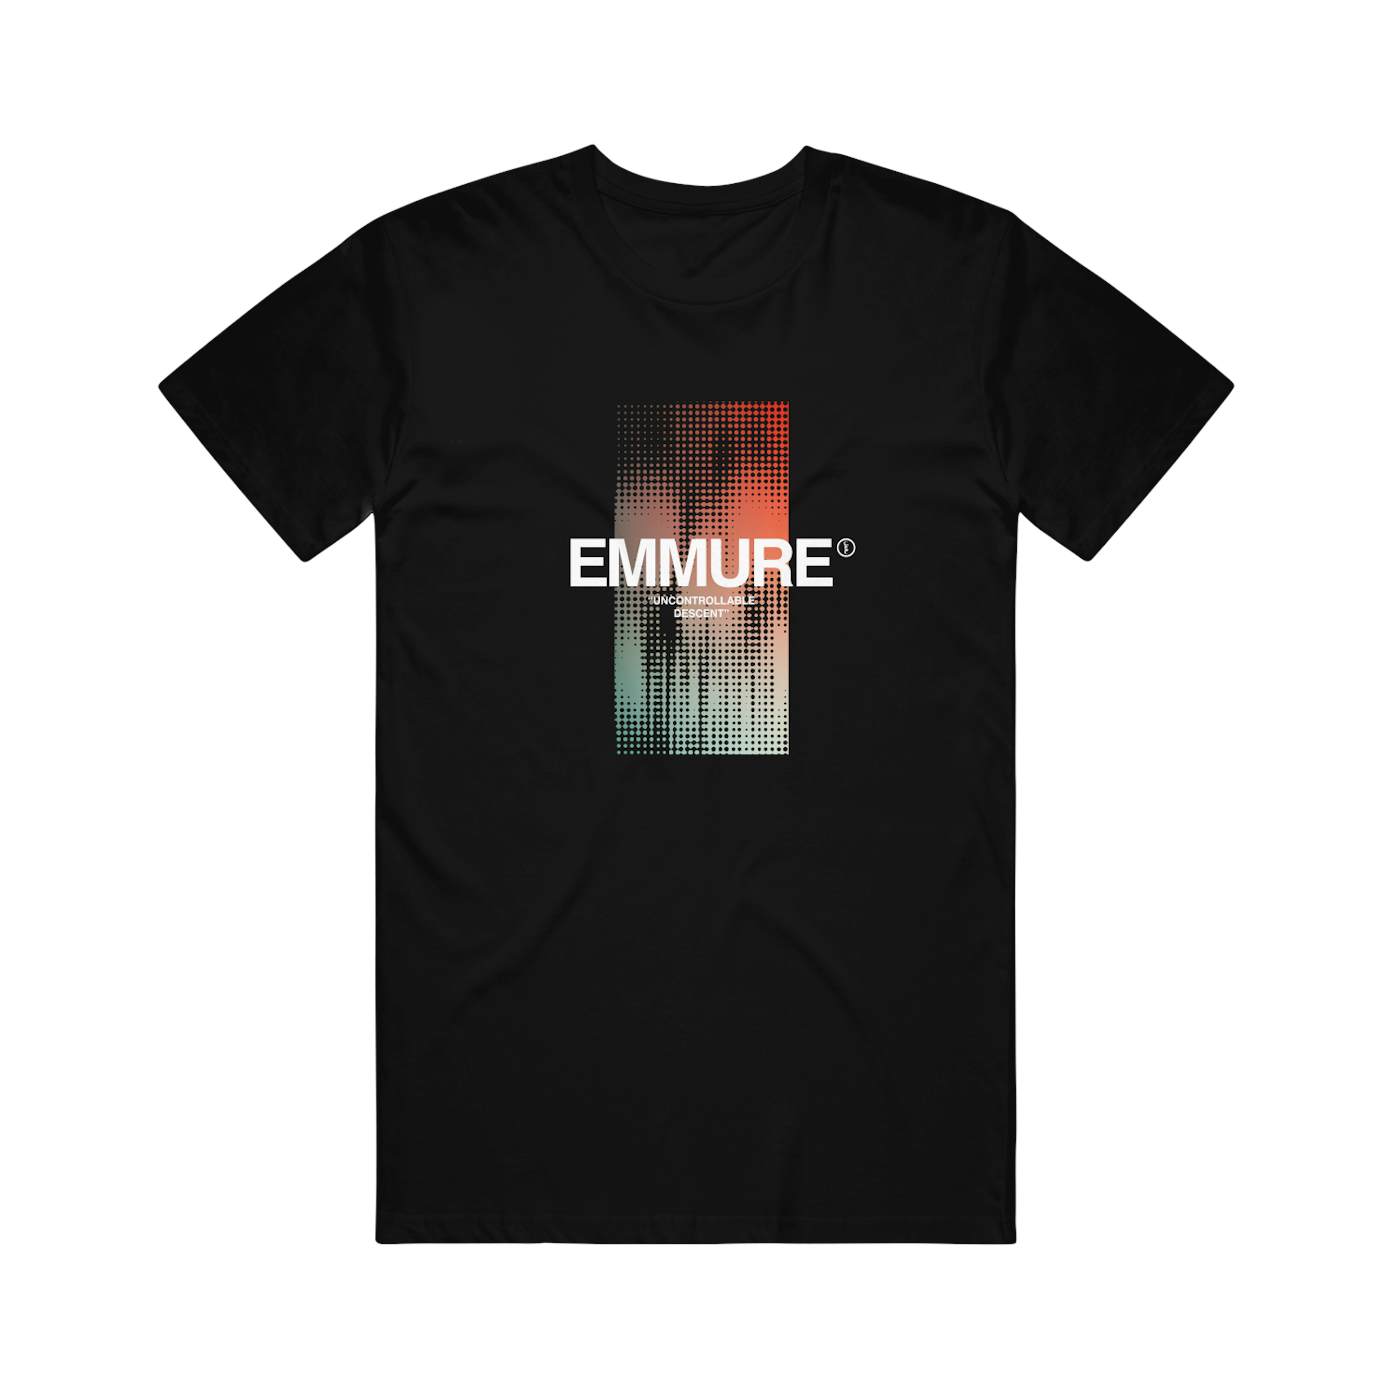 Emmure - Descent Shirt